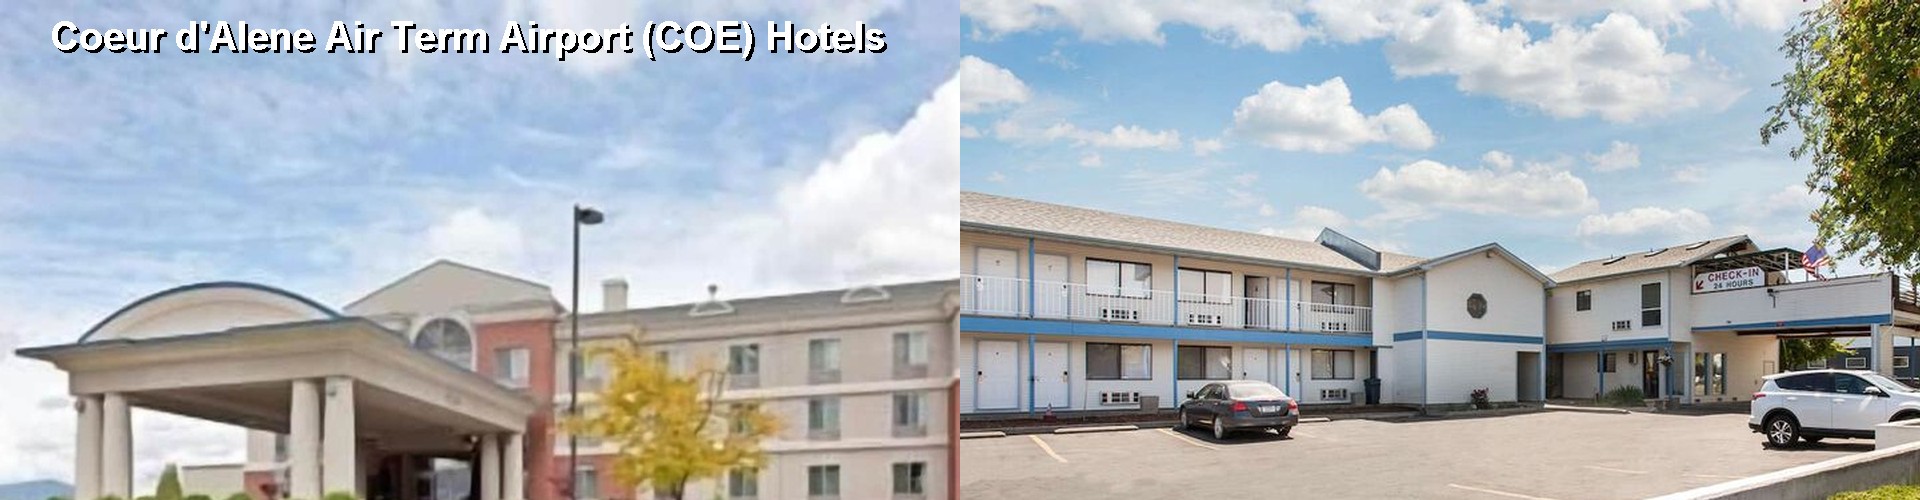 5 Best Hotels near Coeur d'Alene Air Term Airport (COE)